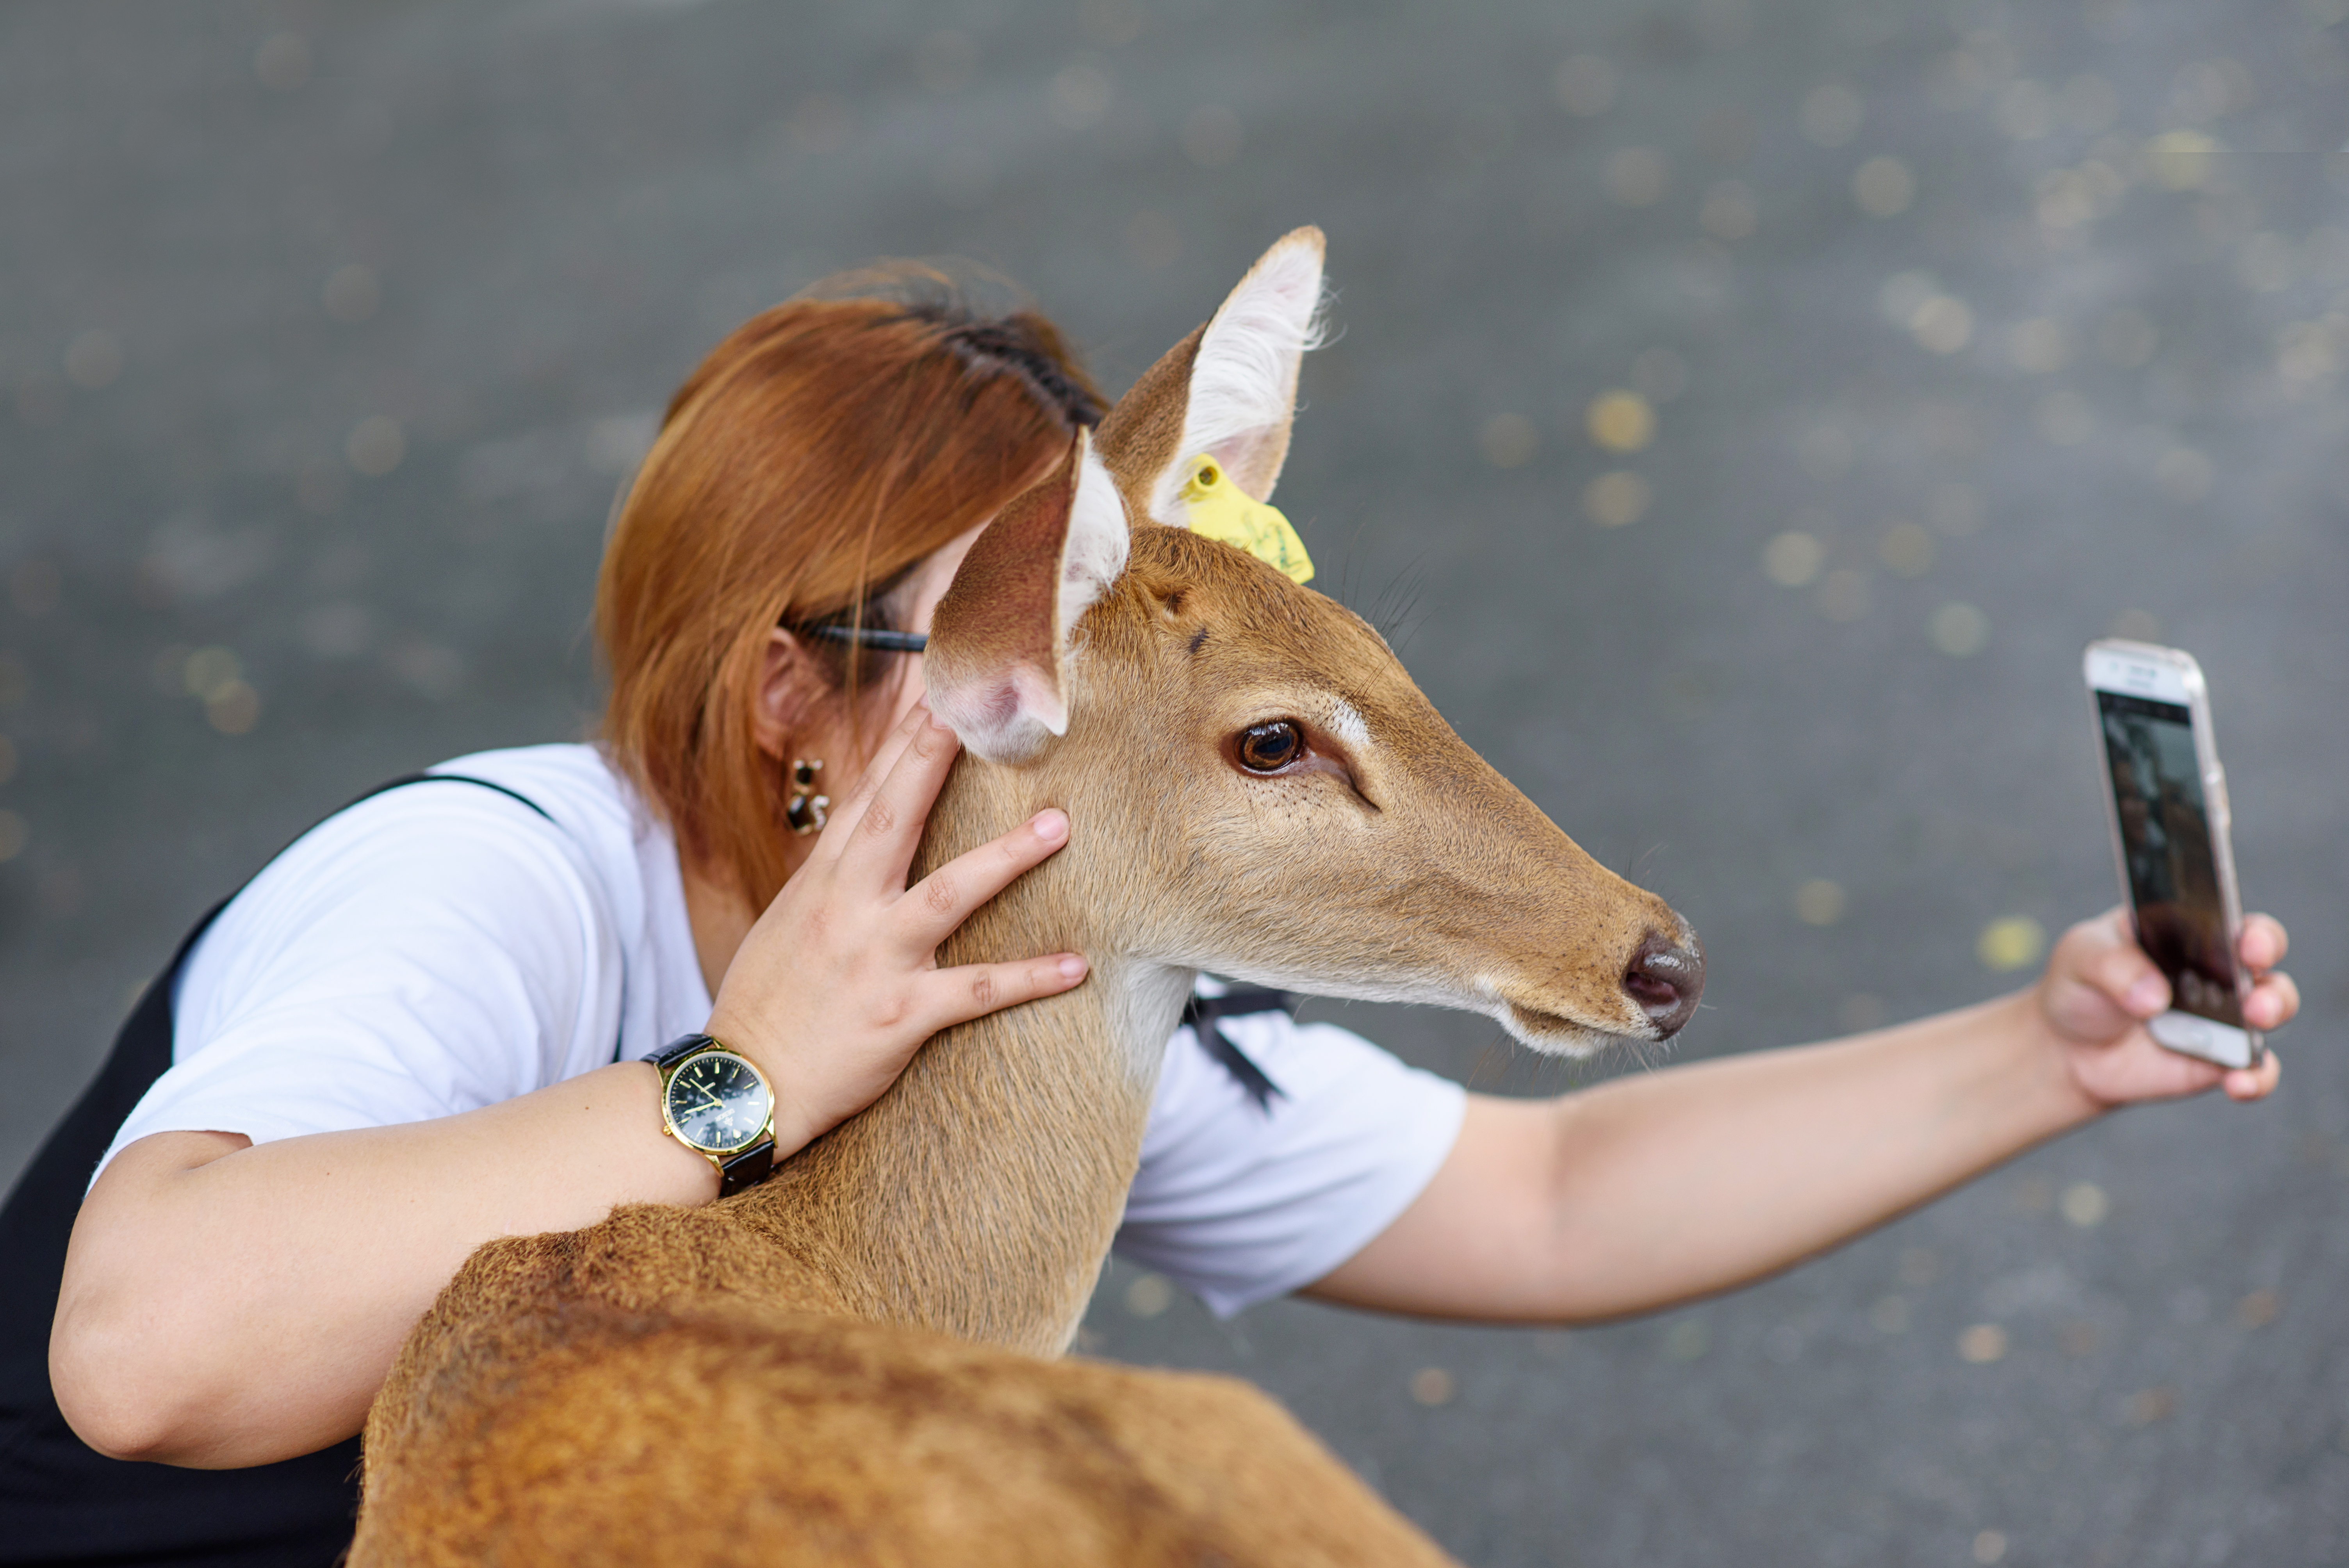 Deer tourist selfie